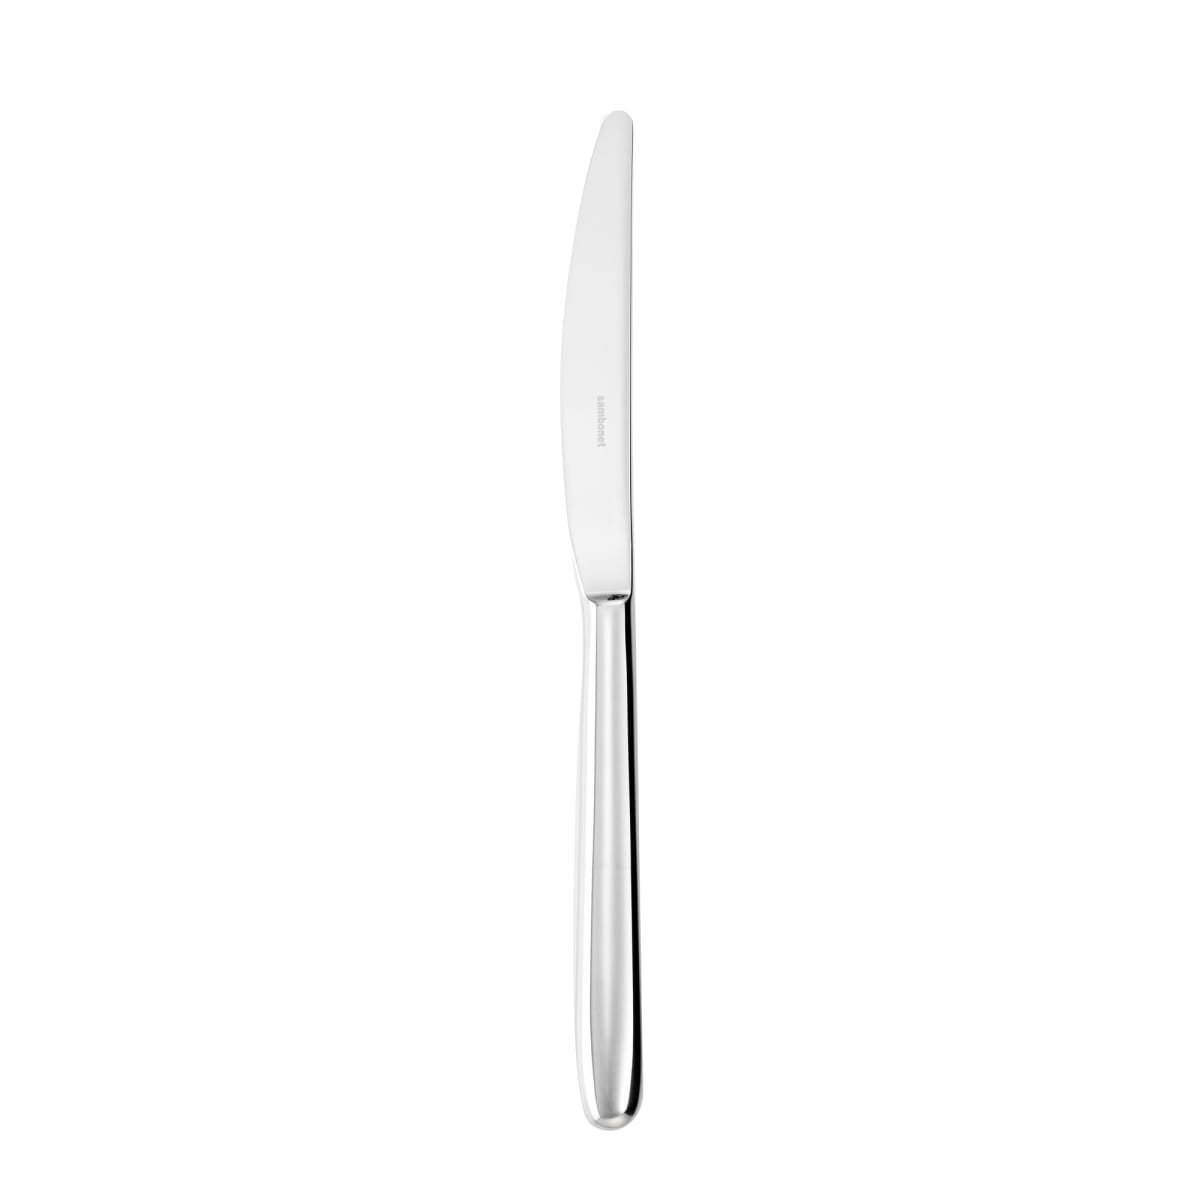 Table knife, s.h., Sambonet